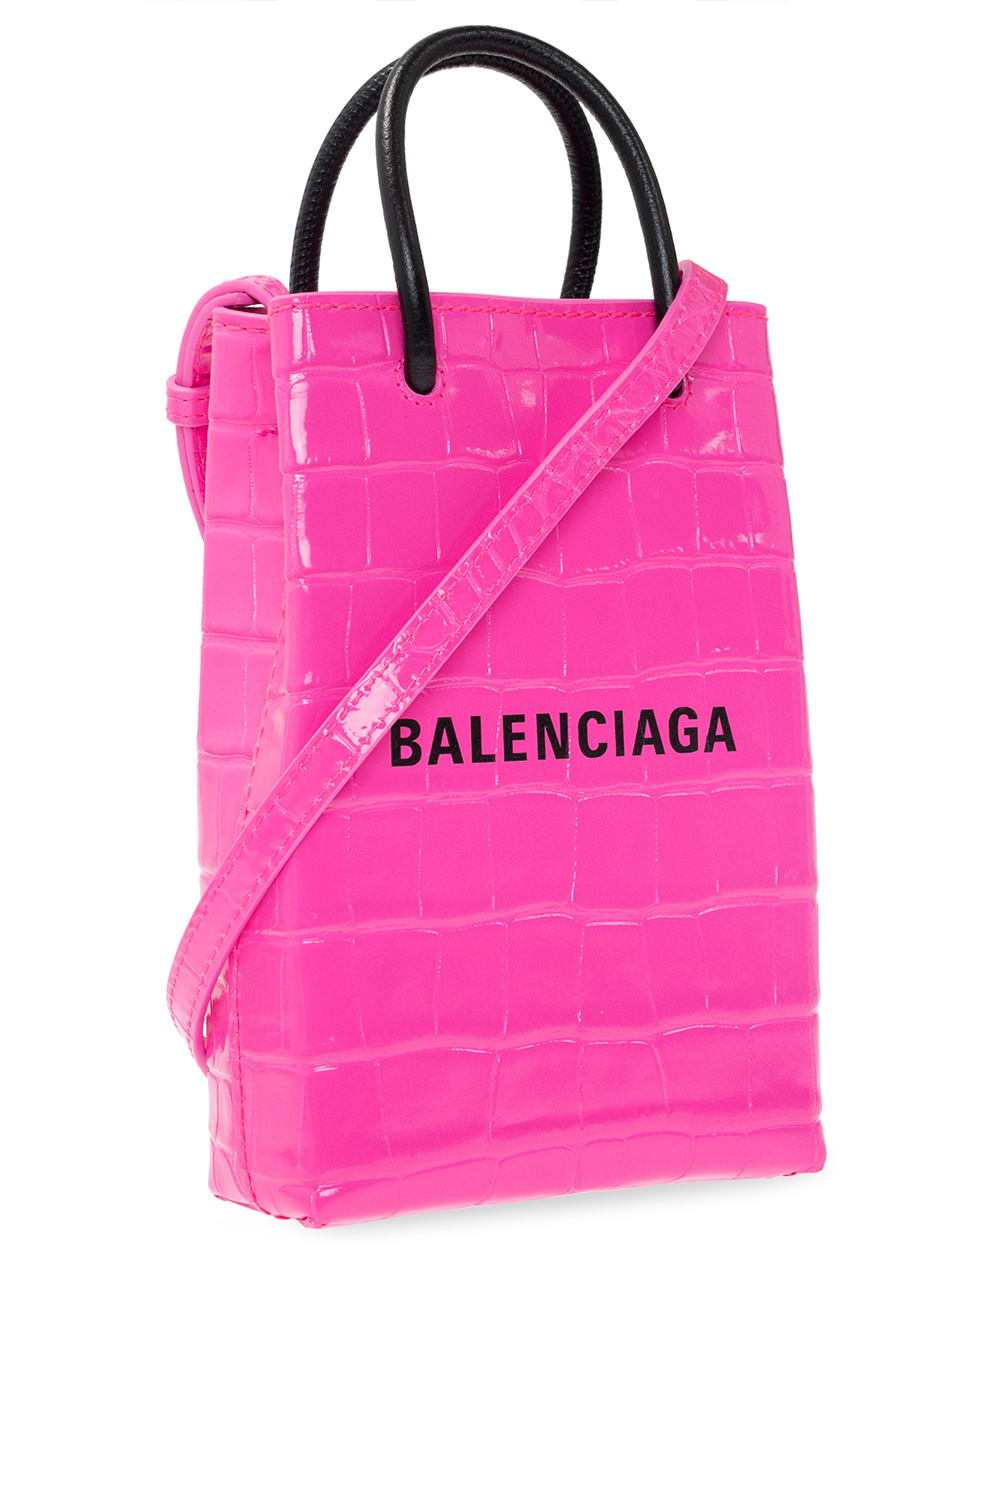 Balenciaga ‘Shopping’ phone Chanel